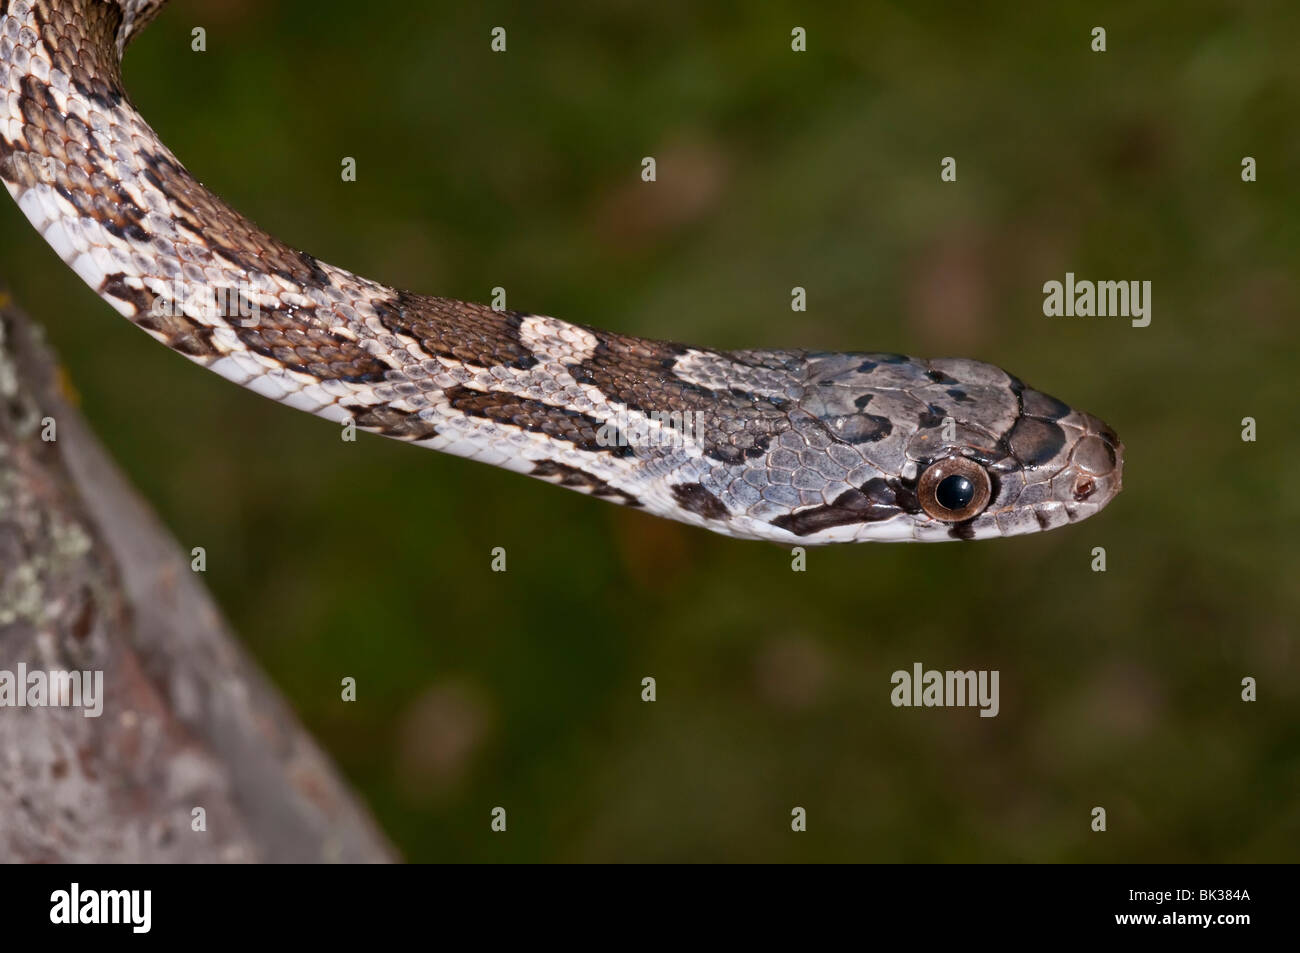 Texas rat snake, Elaphe obsoleta lindheimeri, native to Texas, Louisiana, Arkansas and Oklahoma Stock Photo